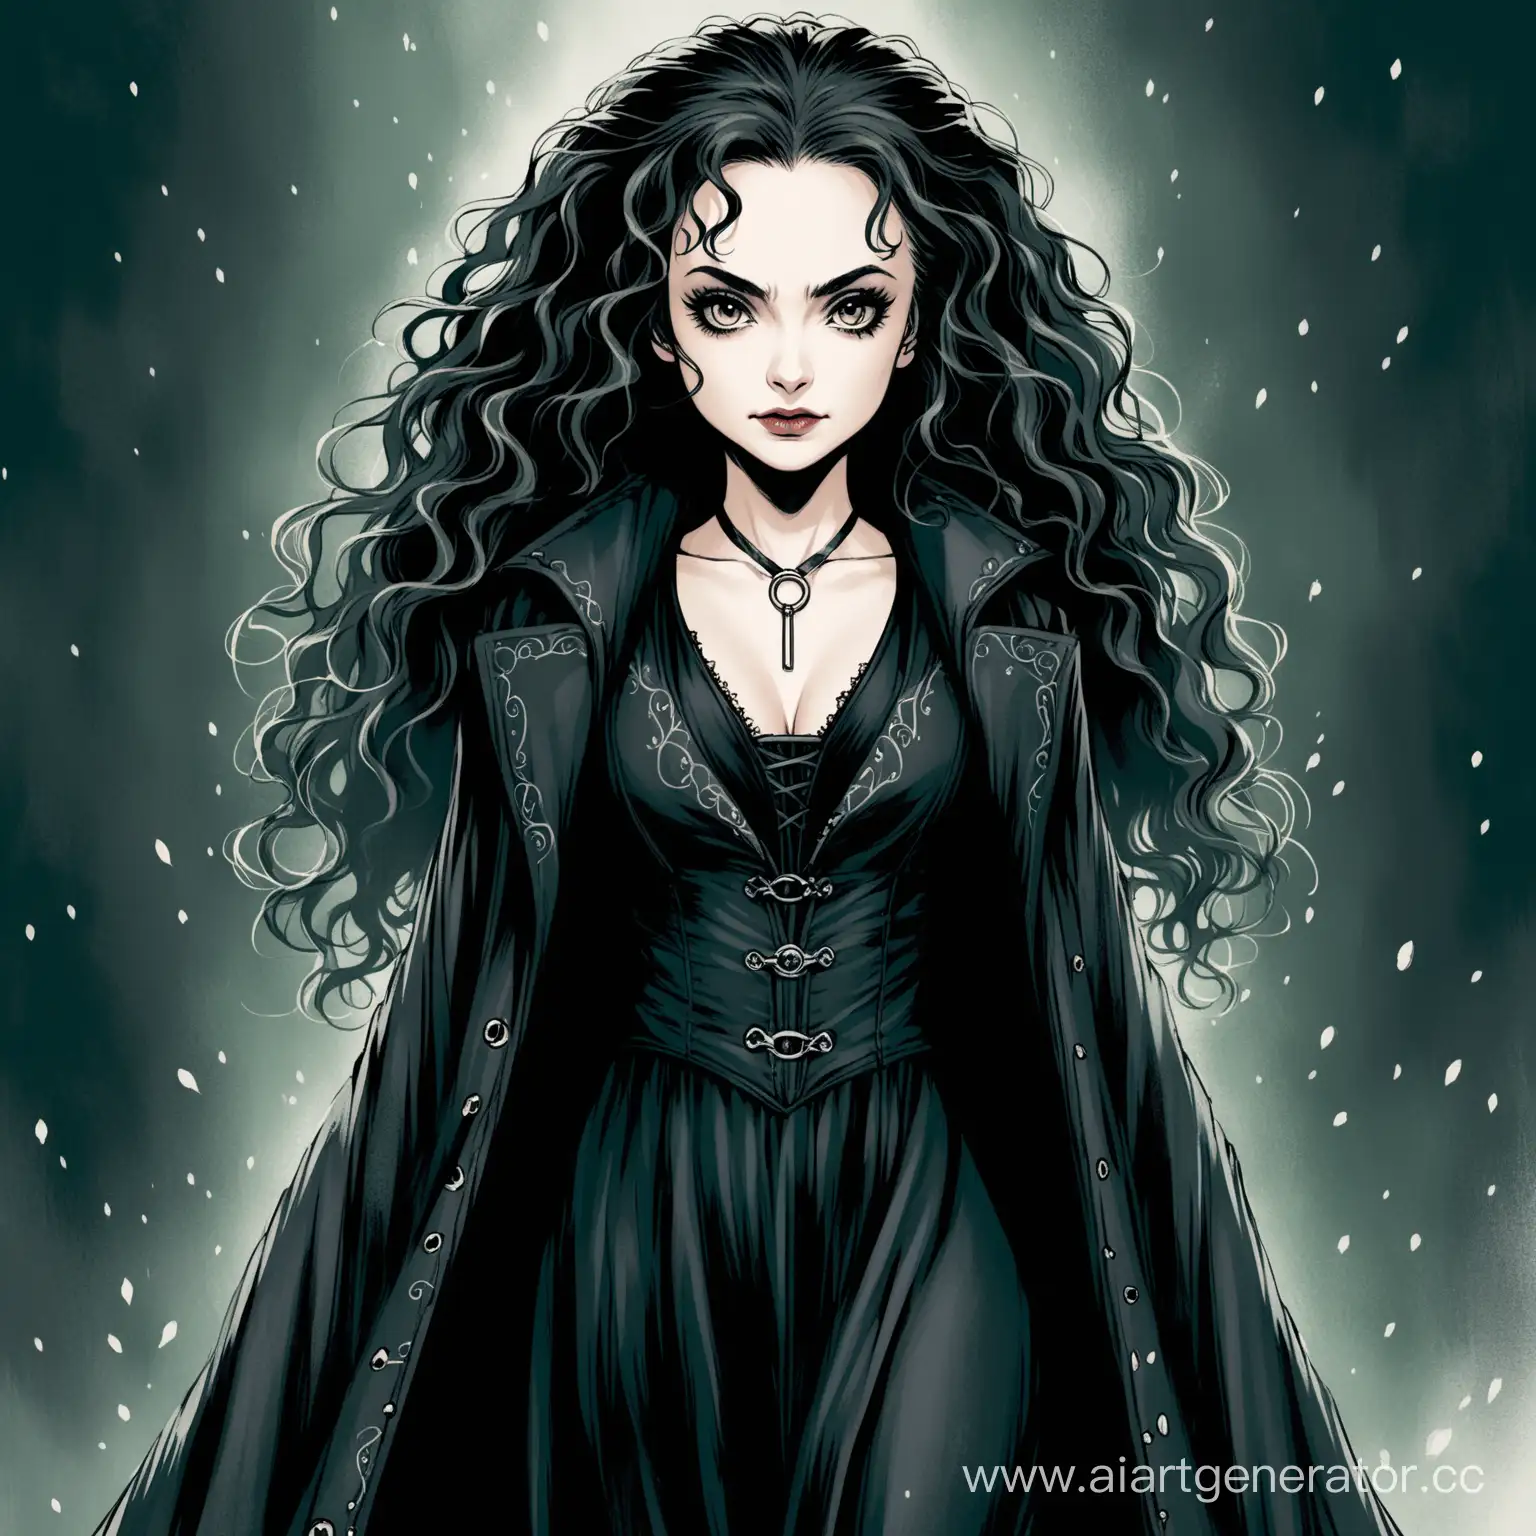 Mysterious-Bellatrix-Lestrange-Portrait-Dark-Witch-with-Sinister-Aura